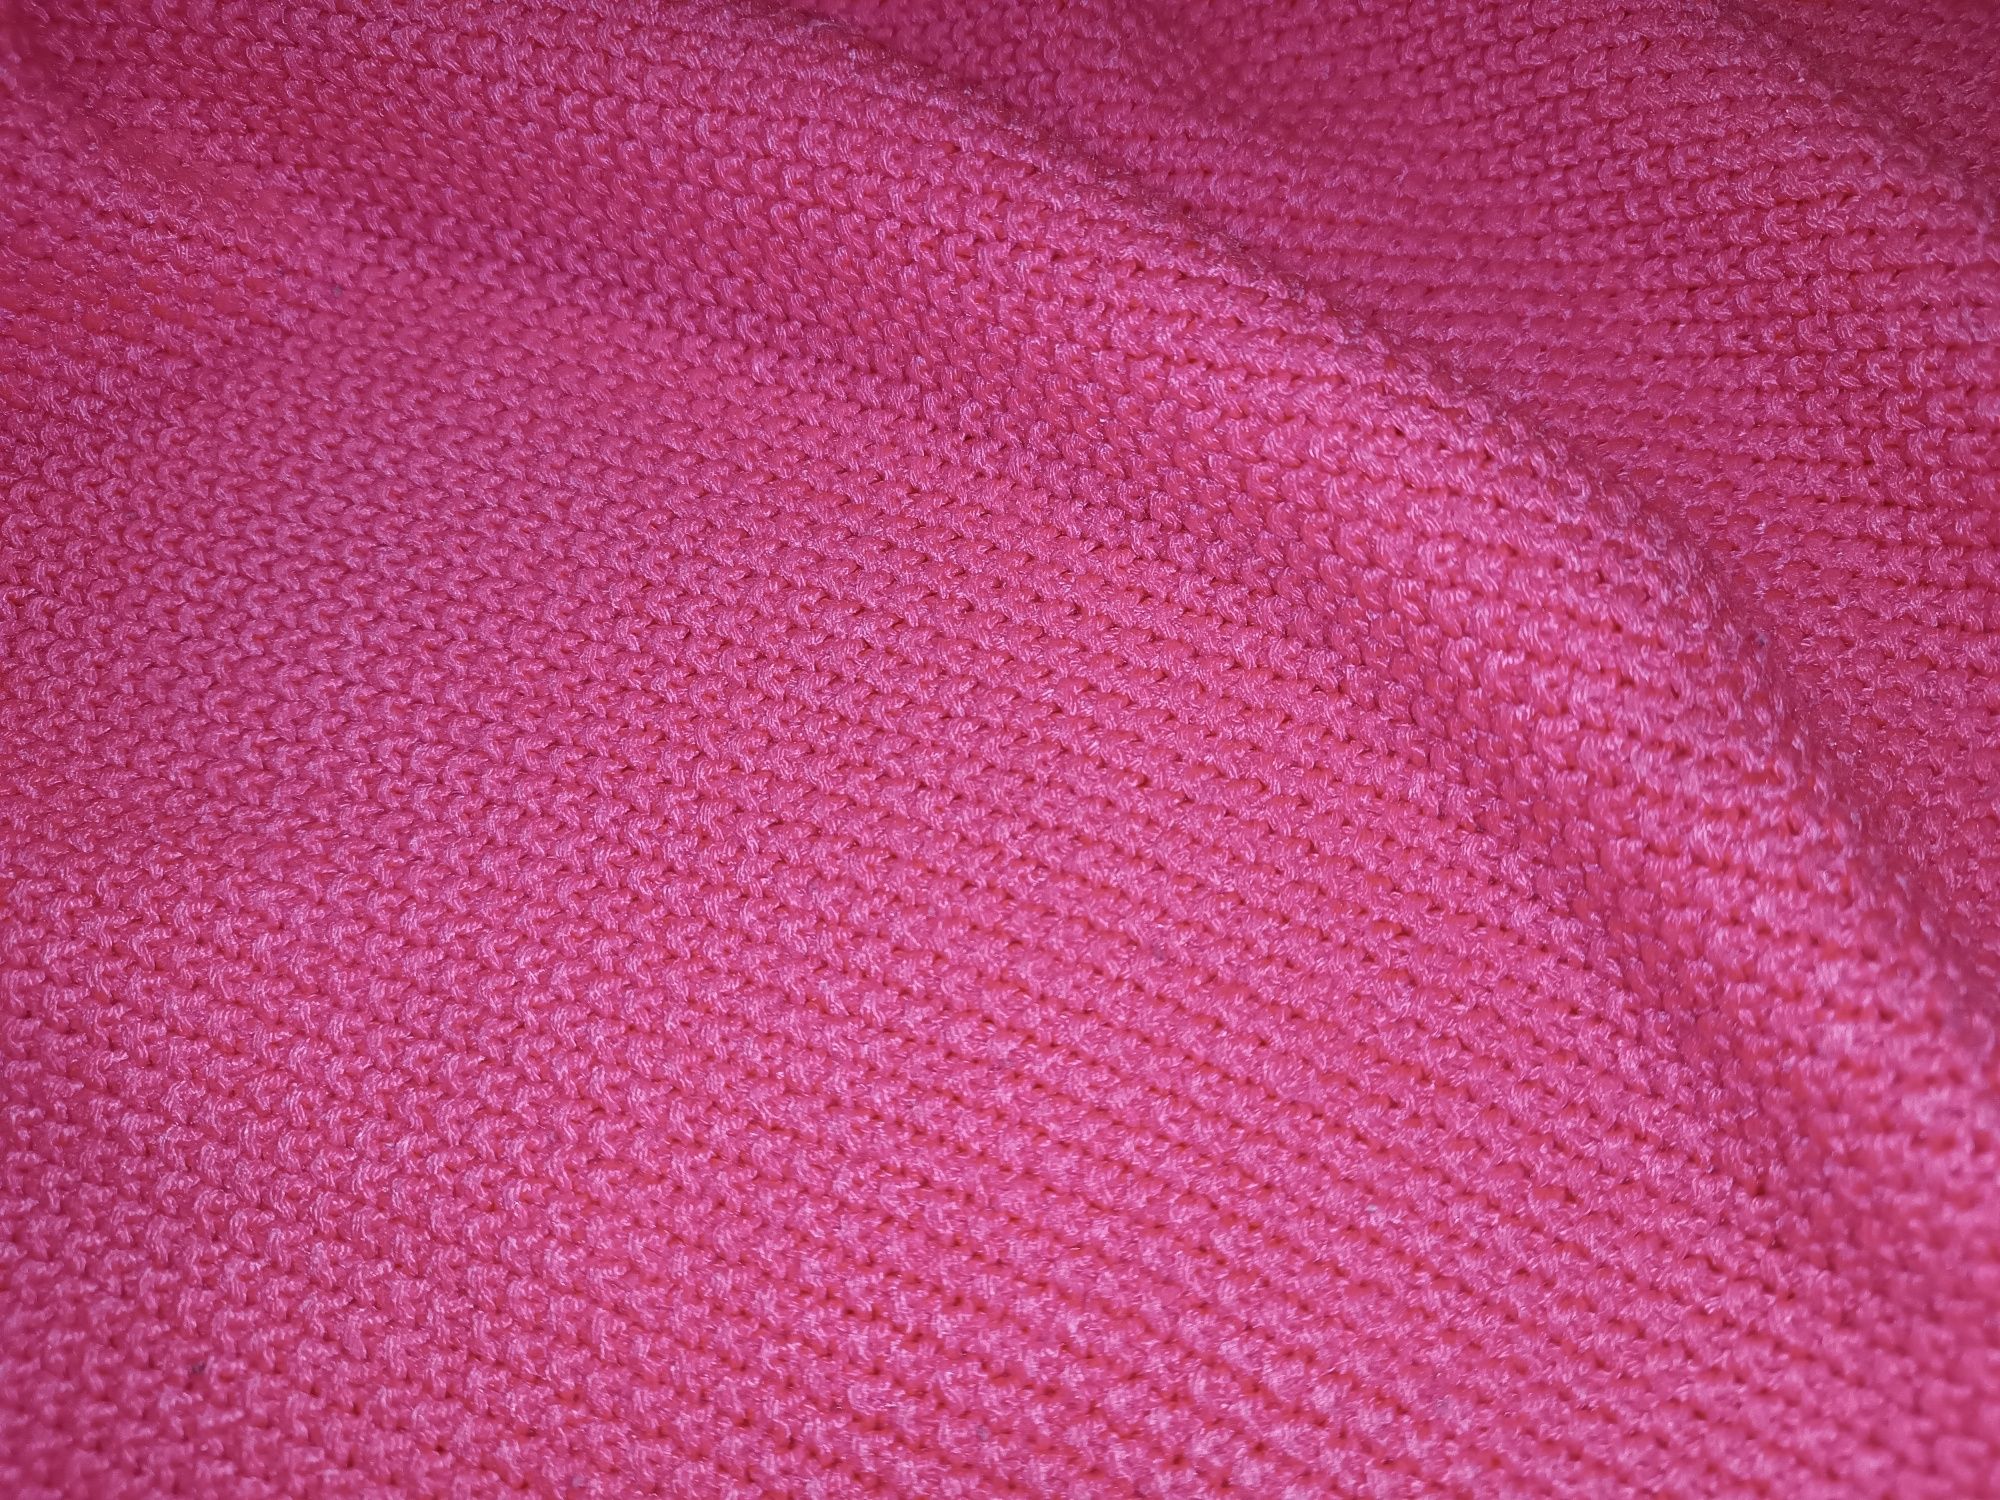 Sweterek neonowy róż h&m barbie pink candy pink